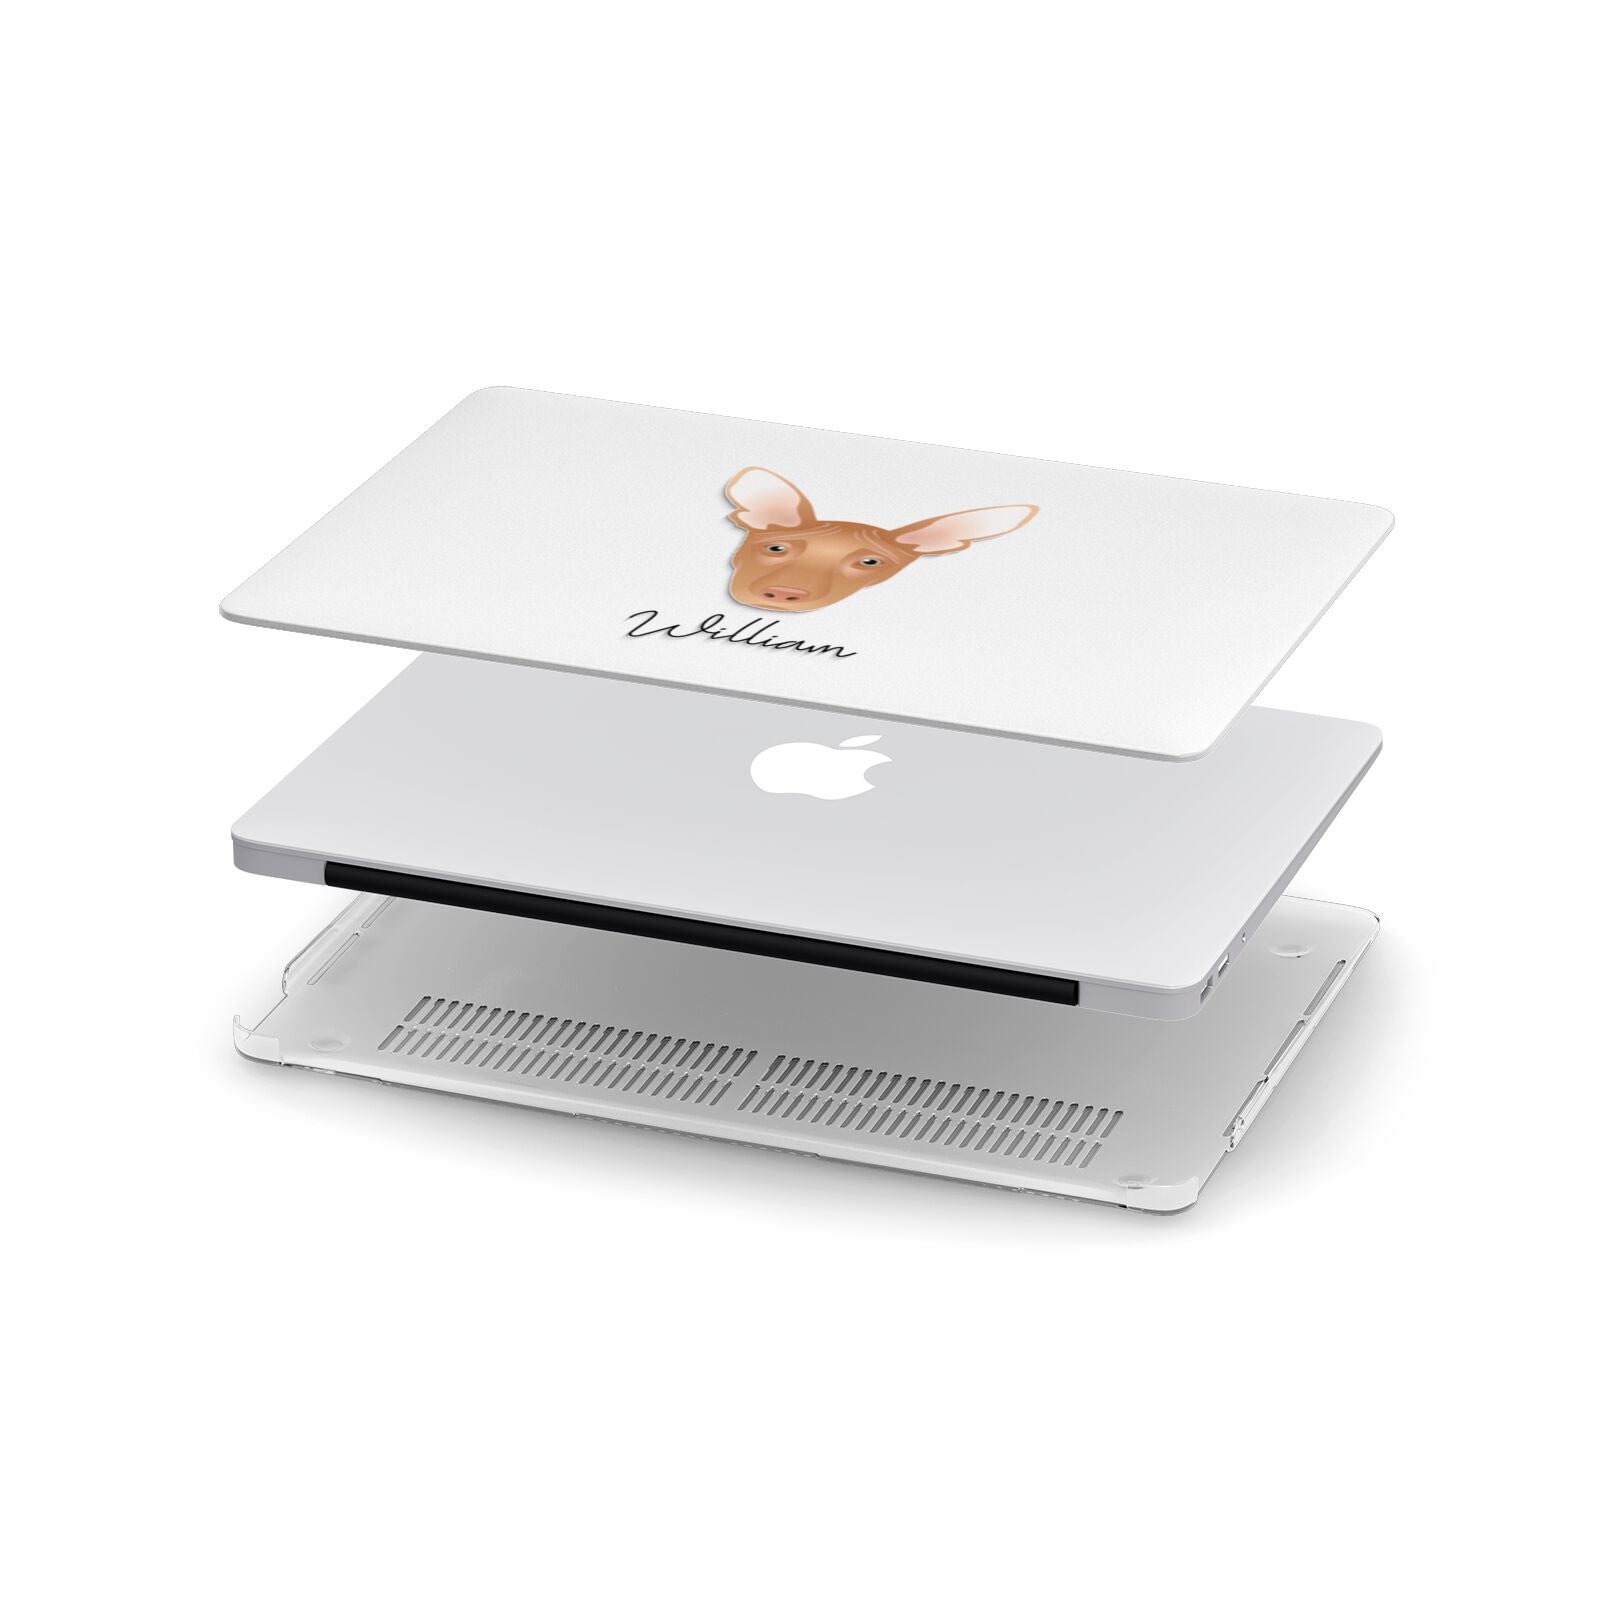 Pharaoh Hound Personalised Apple MacBook Case in Detail